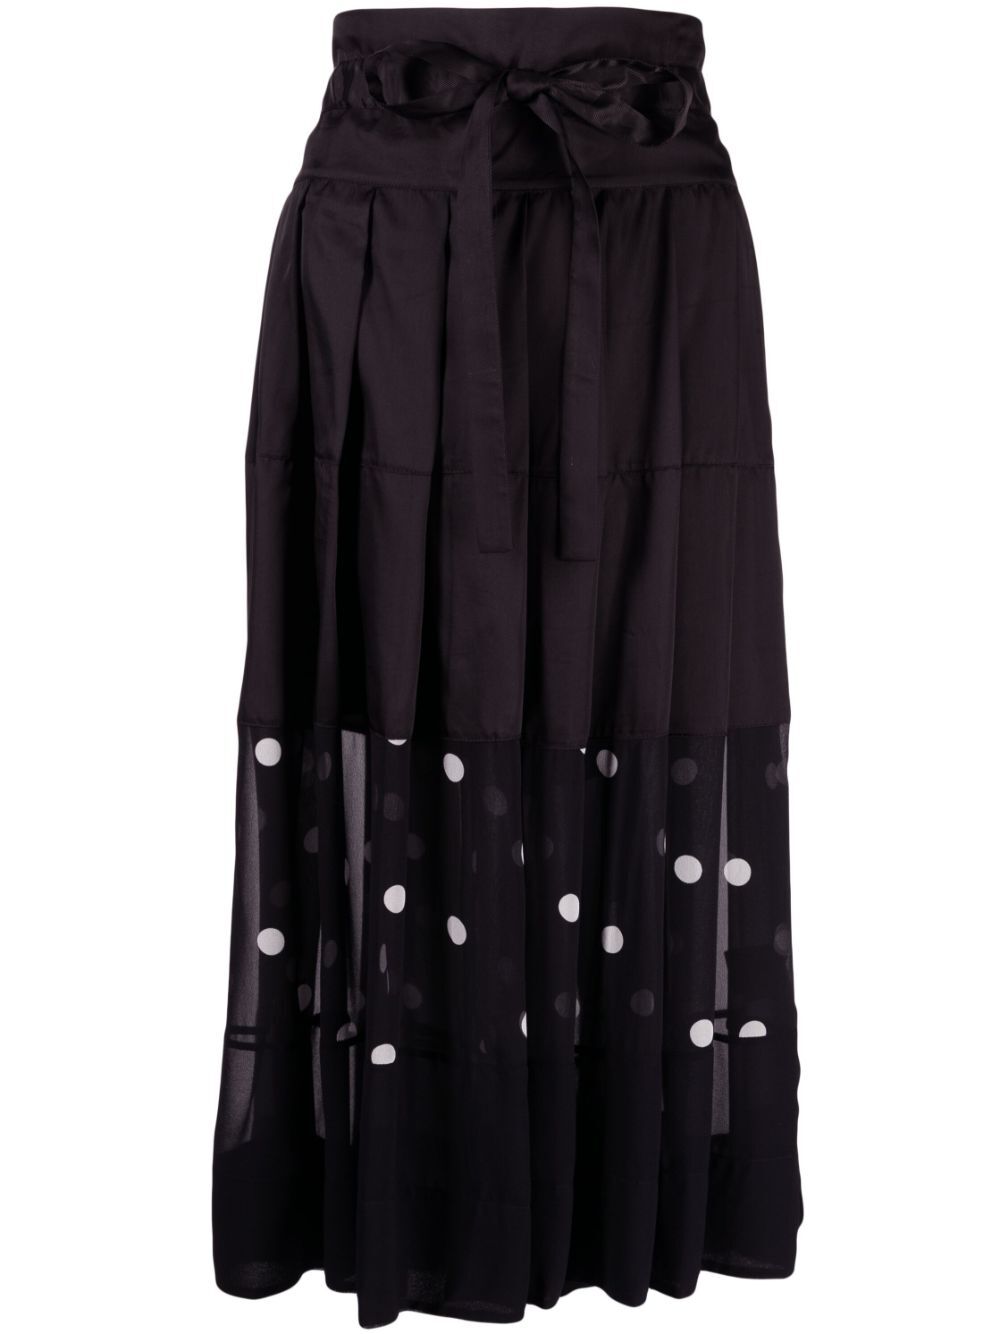 Lee Mathews Bianca panelled midi skirt - Black